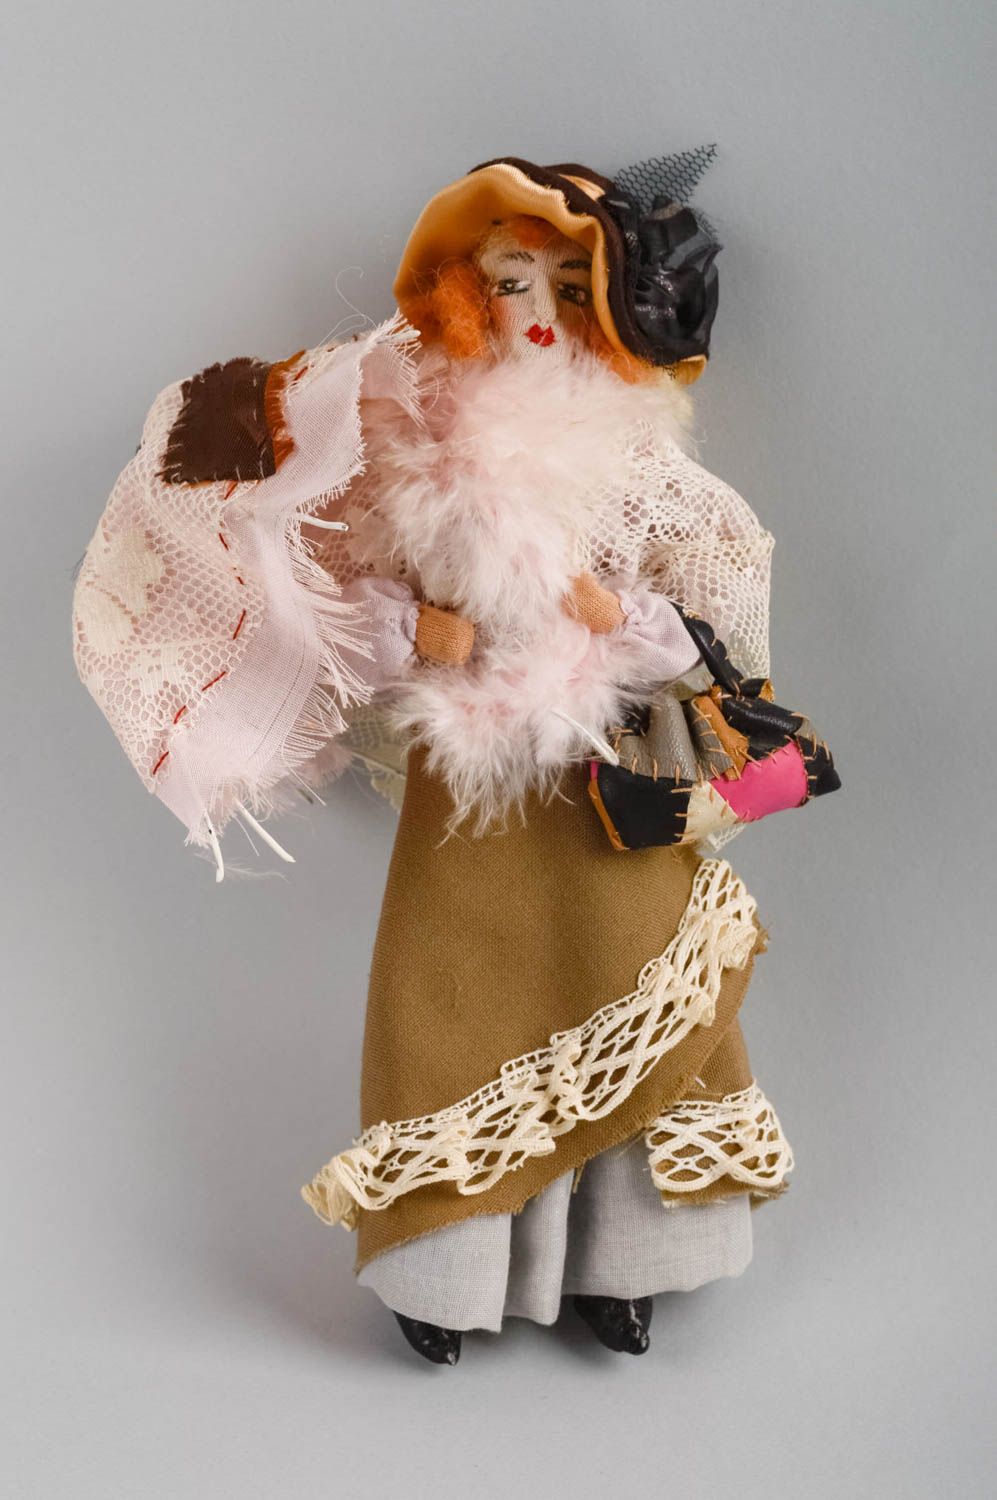 Игрушка кукла из ткани небольшая девушка нарядная для декора ручная работа фото 1